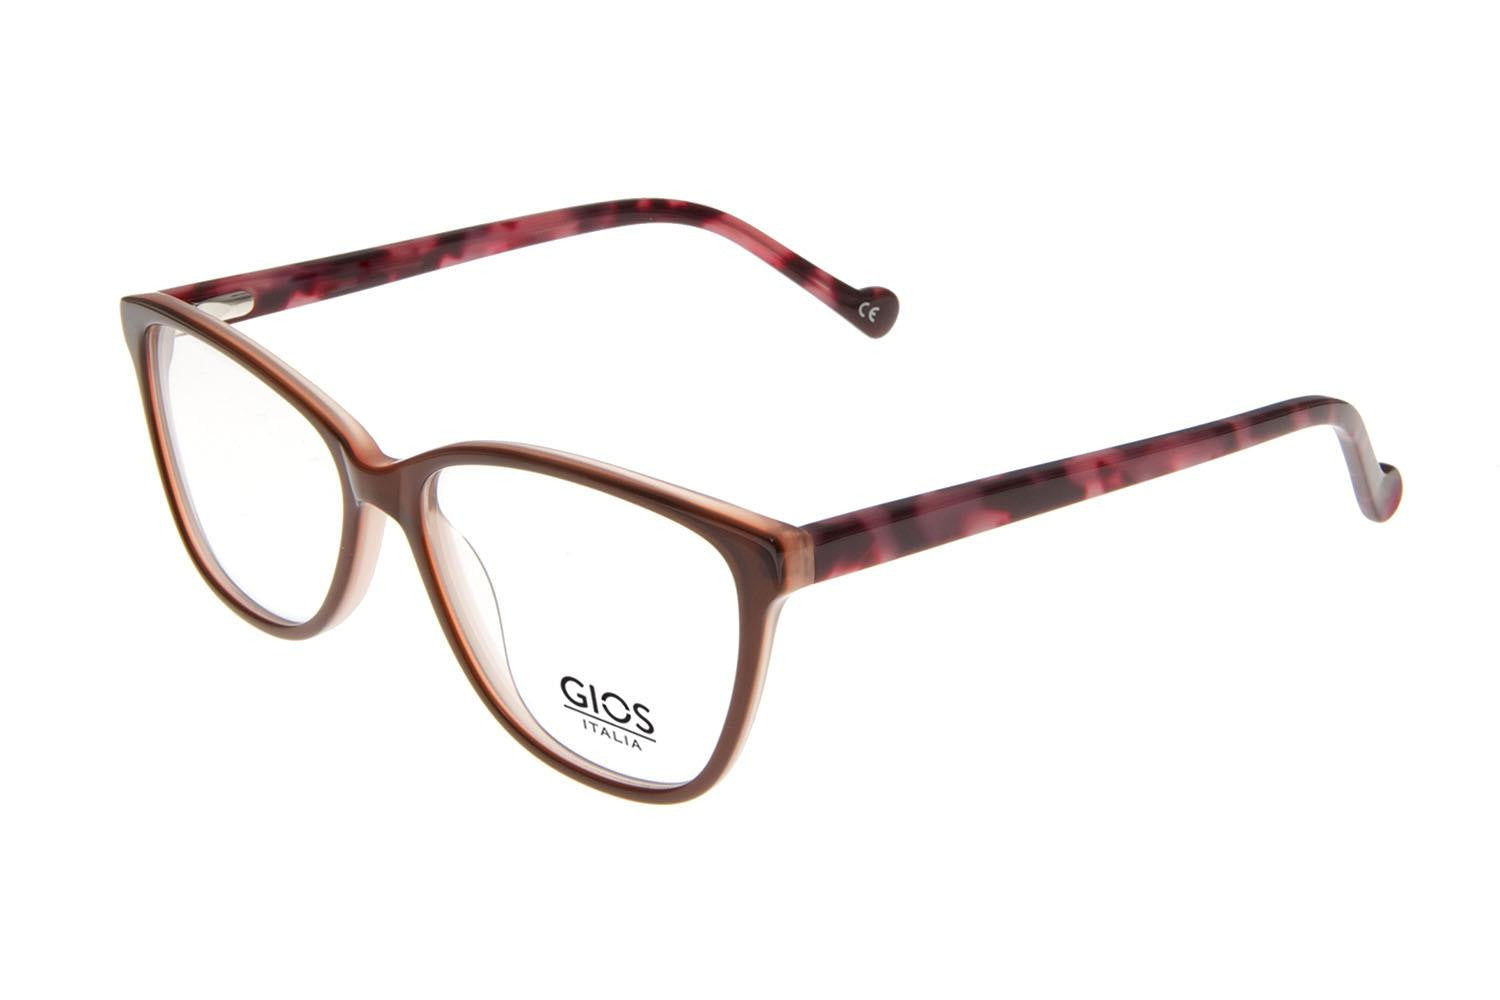 GIOS ITALIA Eyeglasses GRF500096